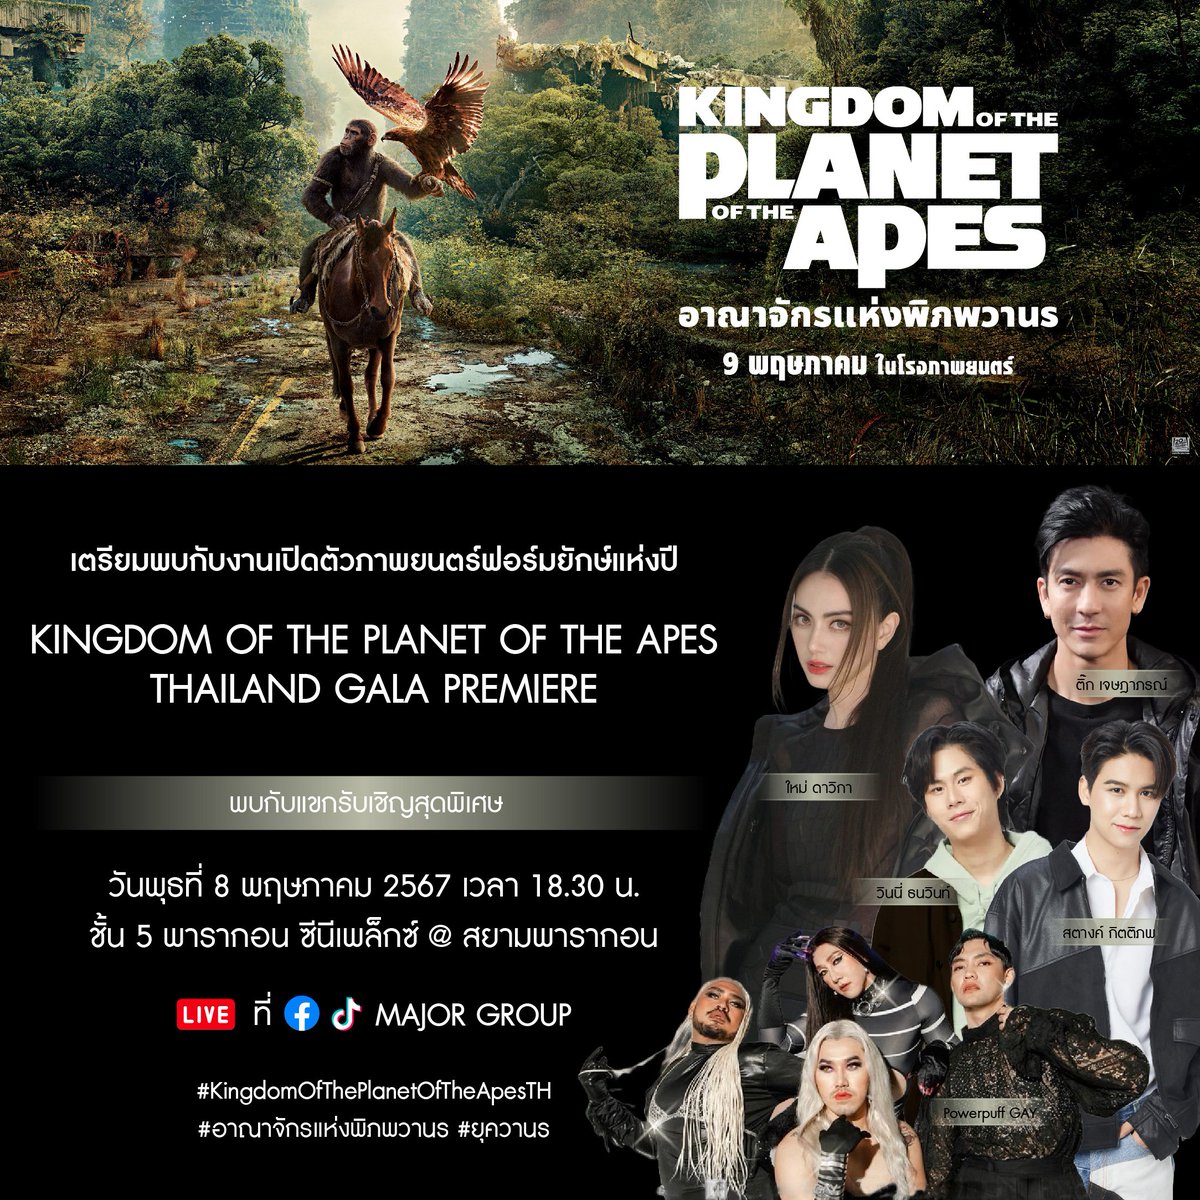 เดอะ วอลท์ ดิสนีย์ (ประเทศไทย) เตรียมจัดกาล่าเปิดตัวภาพยนตร์แอ็กชันผจญภัยฟอร์มยักษ์แห่งปี “Kingdom of the Planet of the Apes อาณาจักรแห่งพิภพวานร” ชวนเหล่าคนดังร่วมกิจกรรมแน่นเวที tinyurl.com/ymwwupj9 #KingdomOfThePlanetOfTheApesTH #อาณาจักรแห่งพิภพวานร